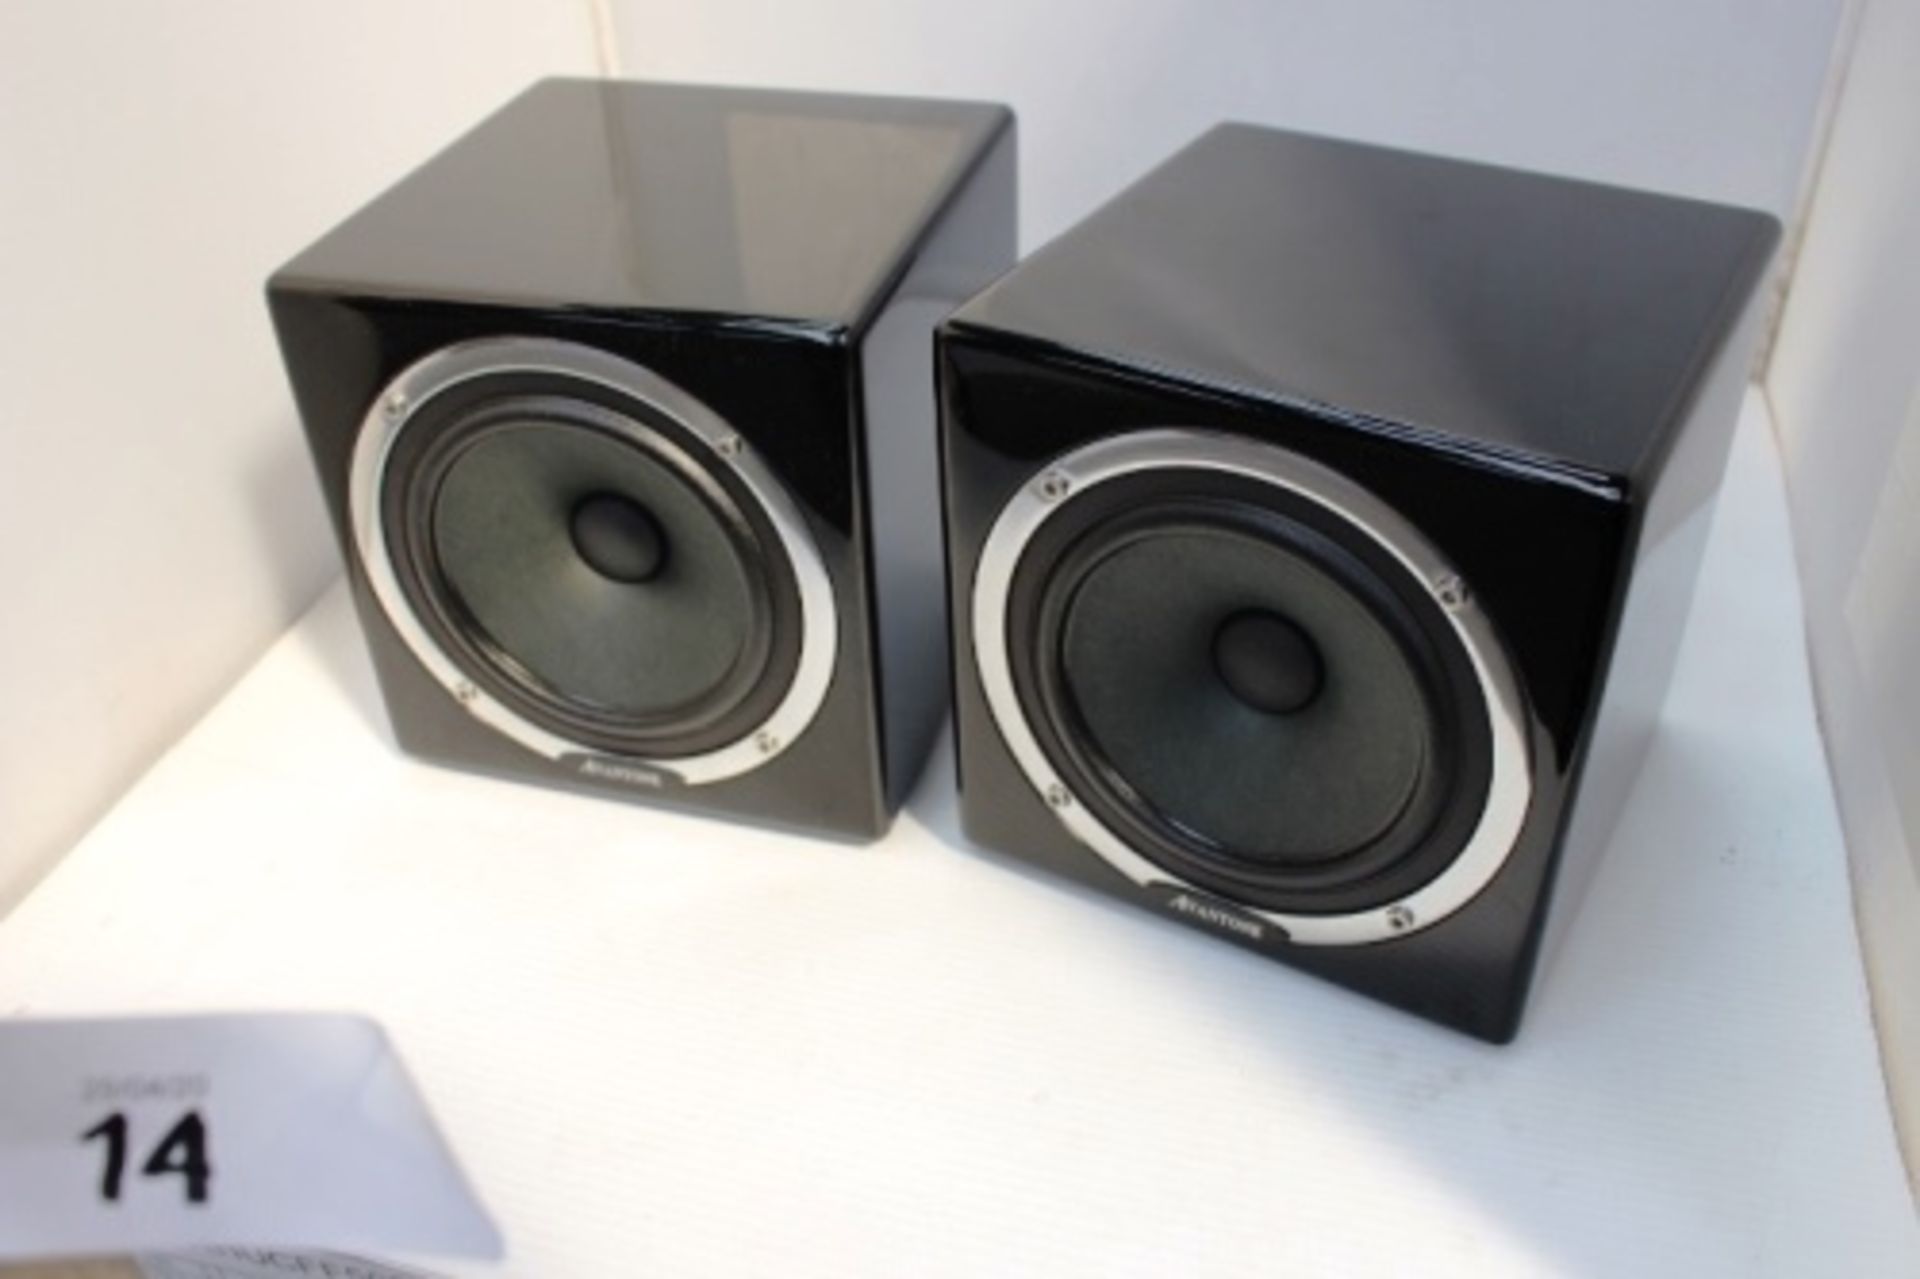 A pair of Avantone MixCube studio speakers, model 10261, BBF7291, RRP £160.00, both working - New (